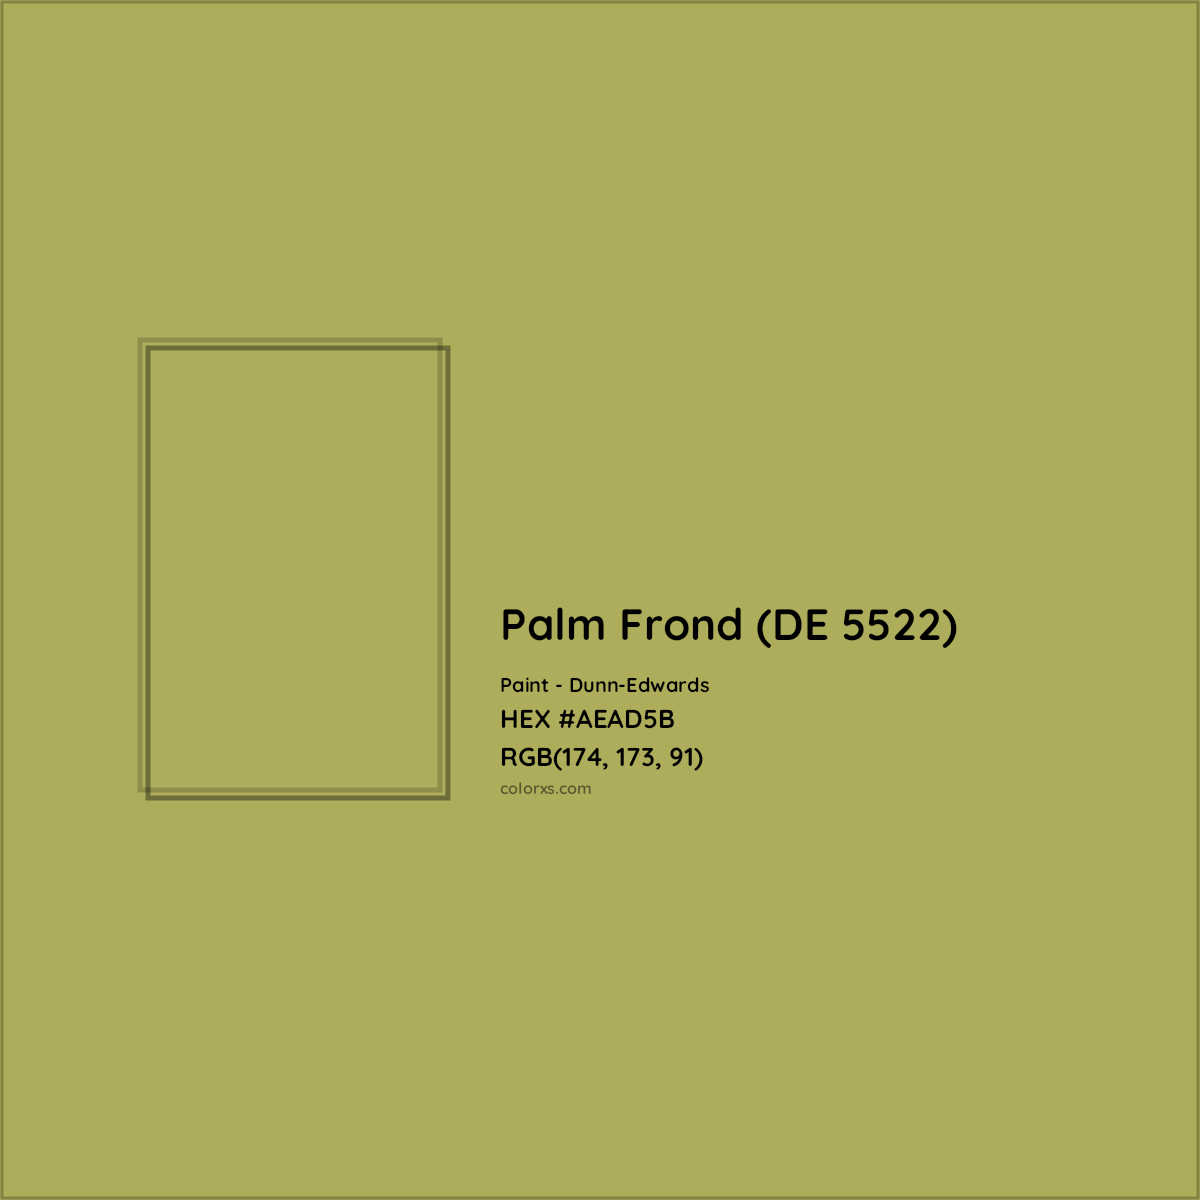 HEX #AEAD5B Palm Frond (DE 5522) Paint Dunn-Edwards - Color Code